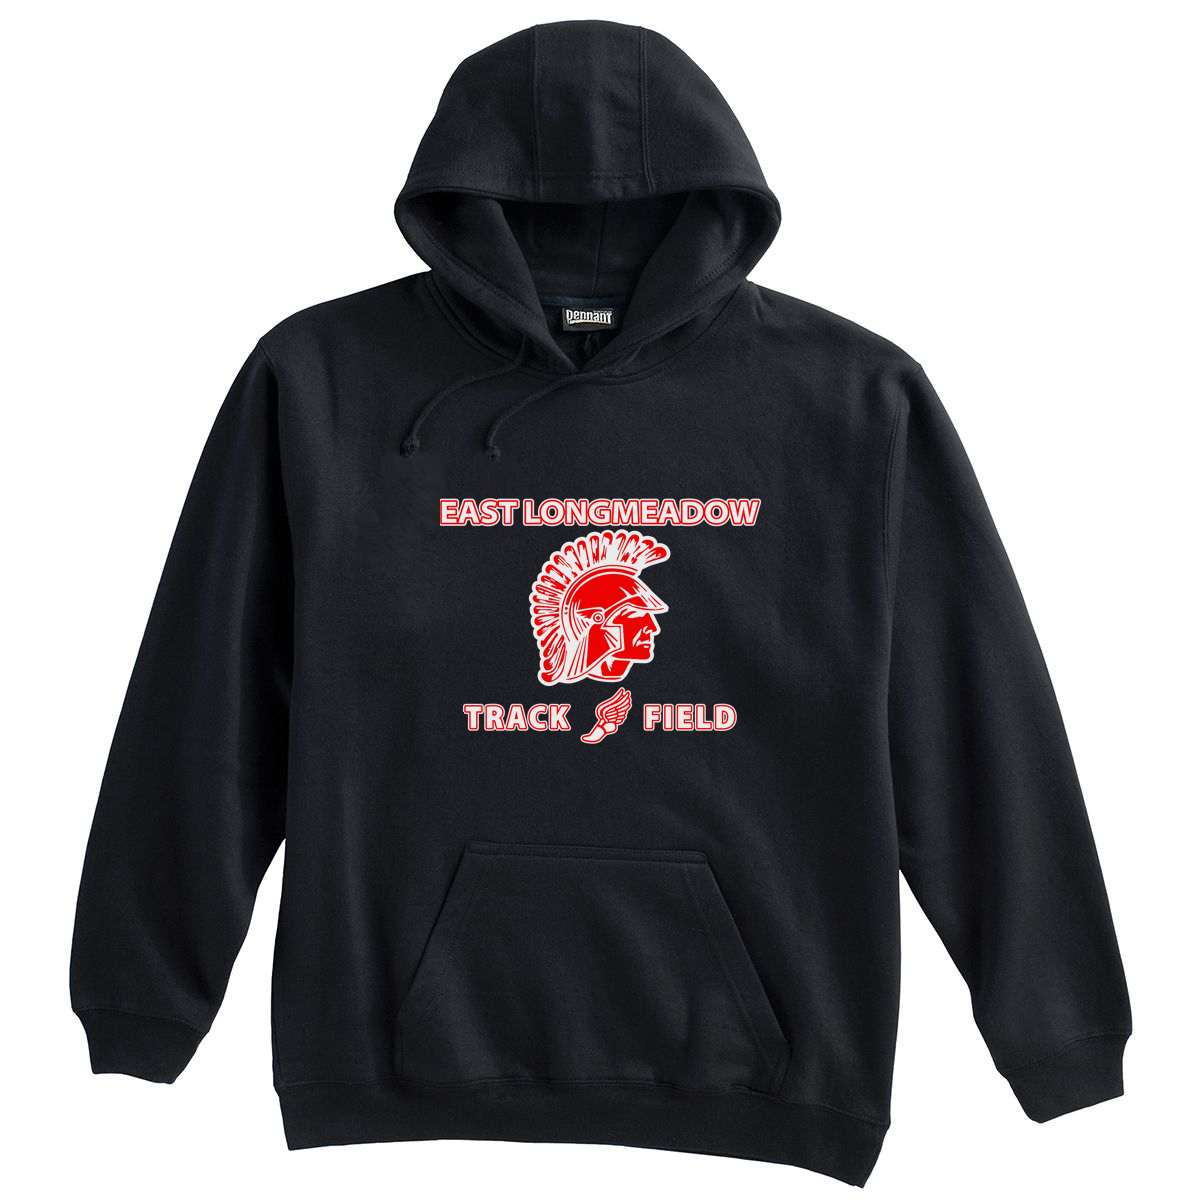 East Longmeadow Track and Field Black Sweatshirt